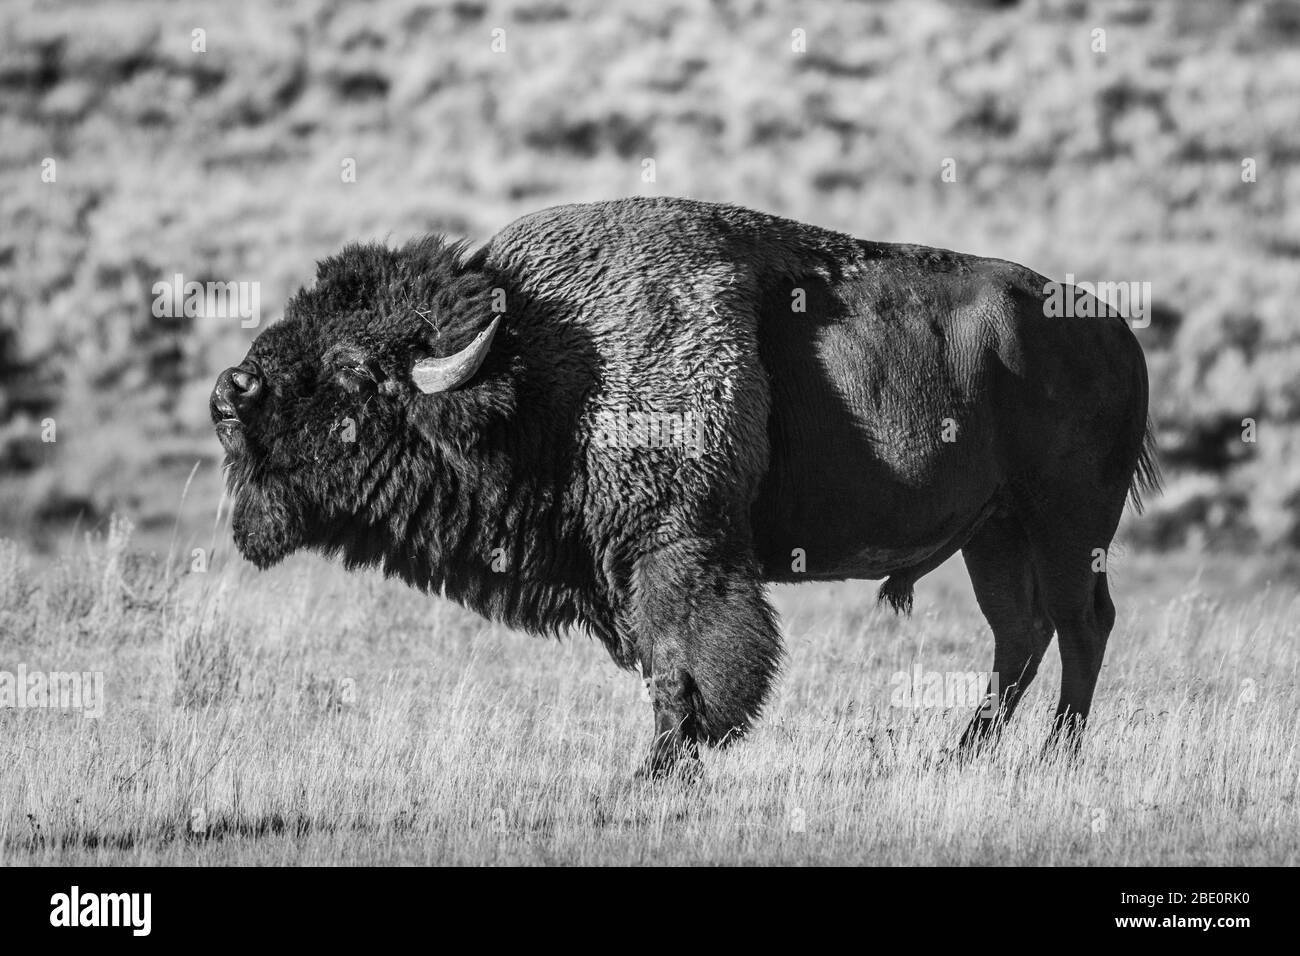 Un bison des taureaux (alias buffle américain) affiche la réaction de Flehman (alias, courbe des lèvres) pendant le rut (alias, saison d'accouplement) dans le nord-ouest du Wyoming. Banque D'Images